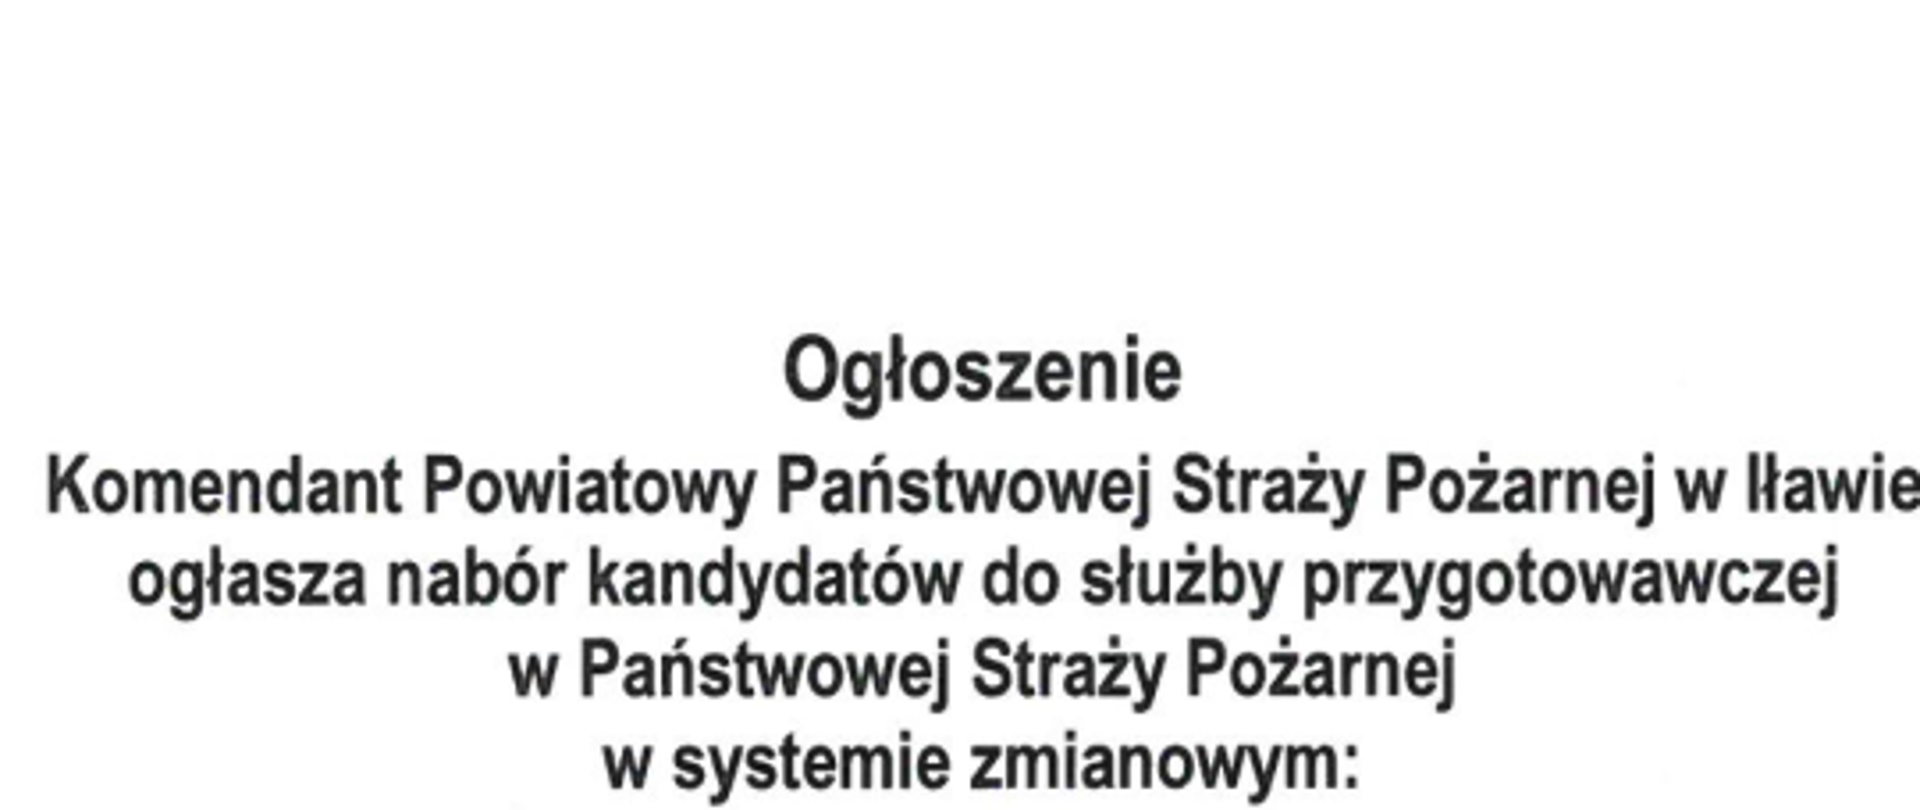 Napis: Ogłoszenie Komendant Powiatowy Państwowej Straży Pożarnej w Iławie ogłasza nabór kandydatów do służby przygotowawczej w Państwowej Straży Pożarnej w systemie zmianowym.